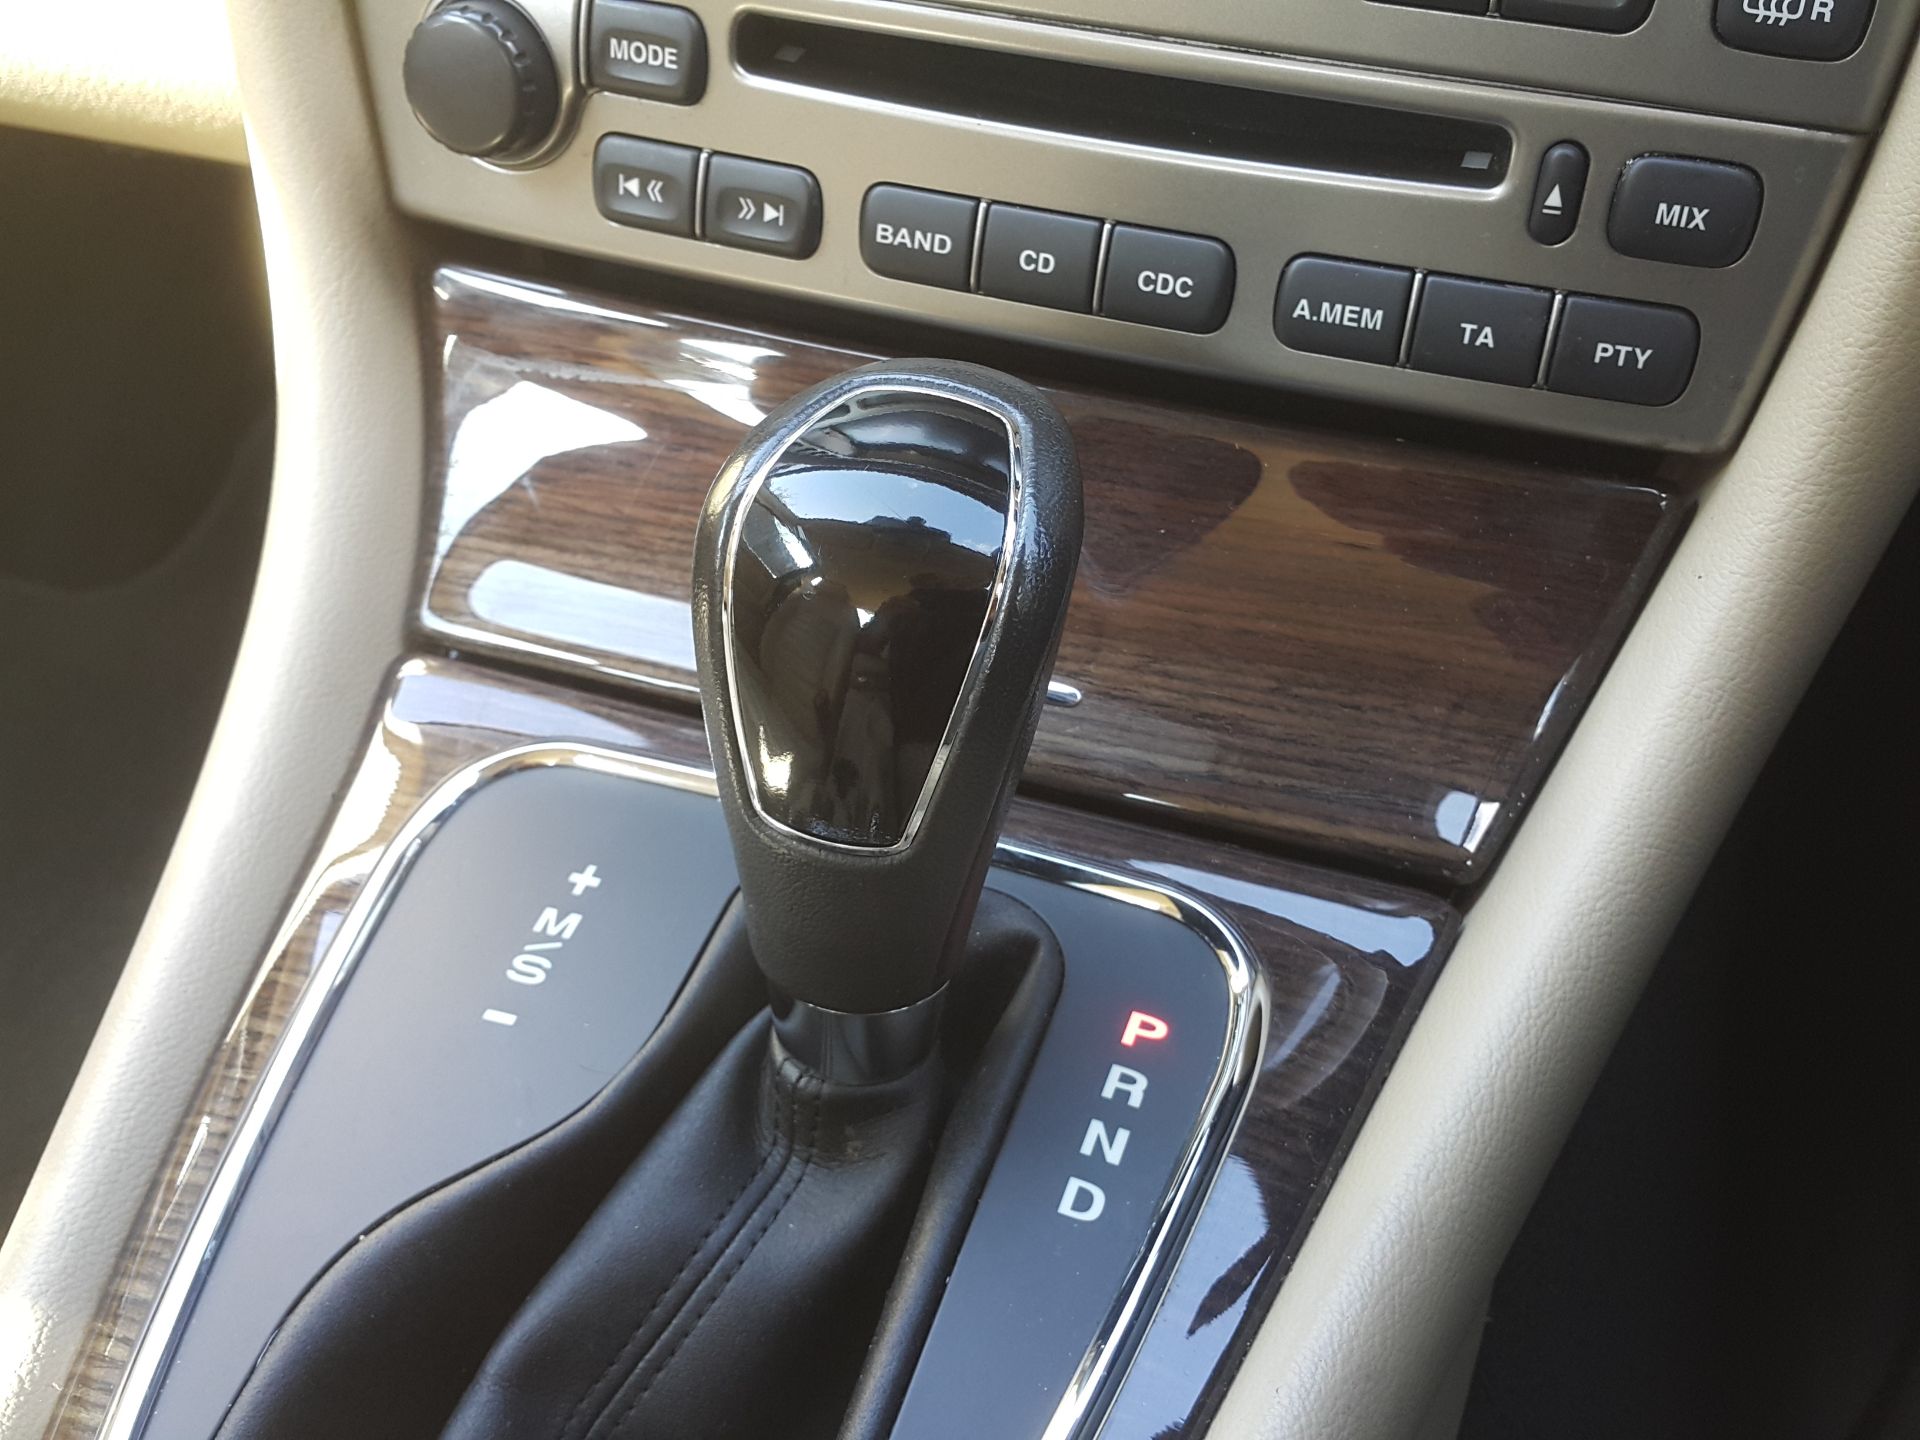 Jaguar X Type SE - Saloon, Automatic, Diesel, 85000 Miles, MOT'd Until May 2018 - Buyers Premium 7% - Image 12 of 19